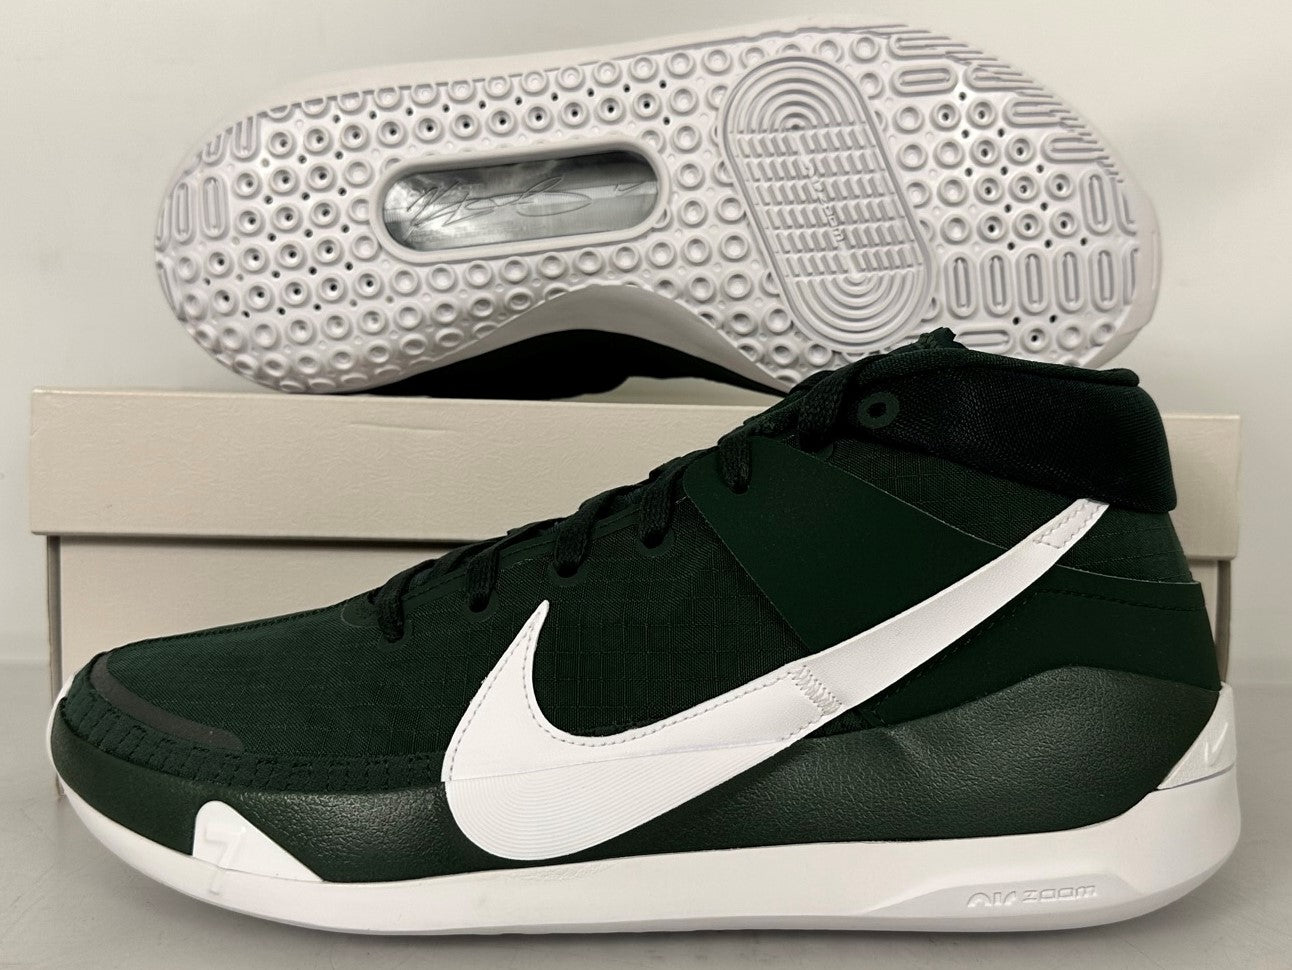 Nike Green KD13 TB Promo Basketball Shoes Men's Size 15